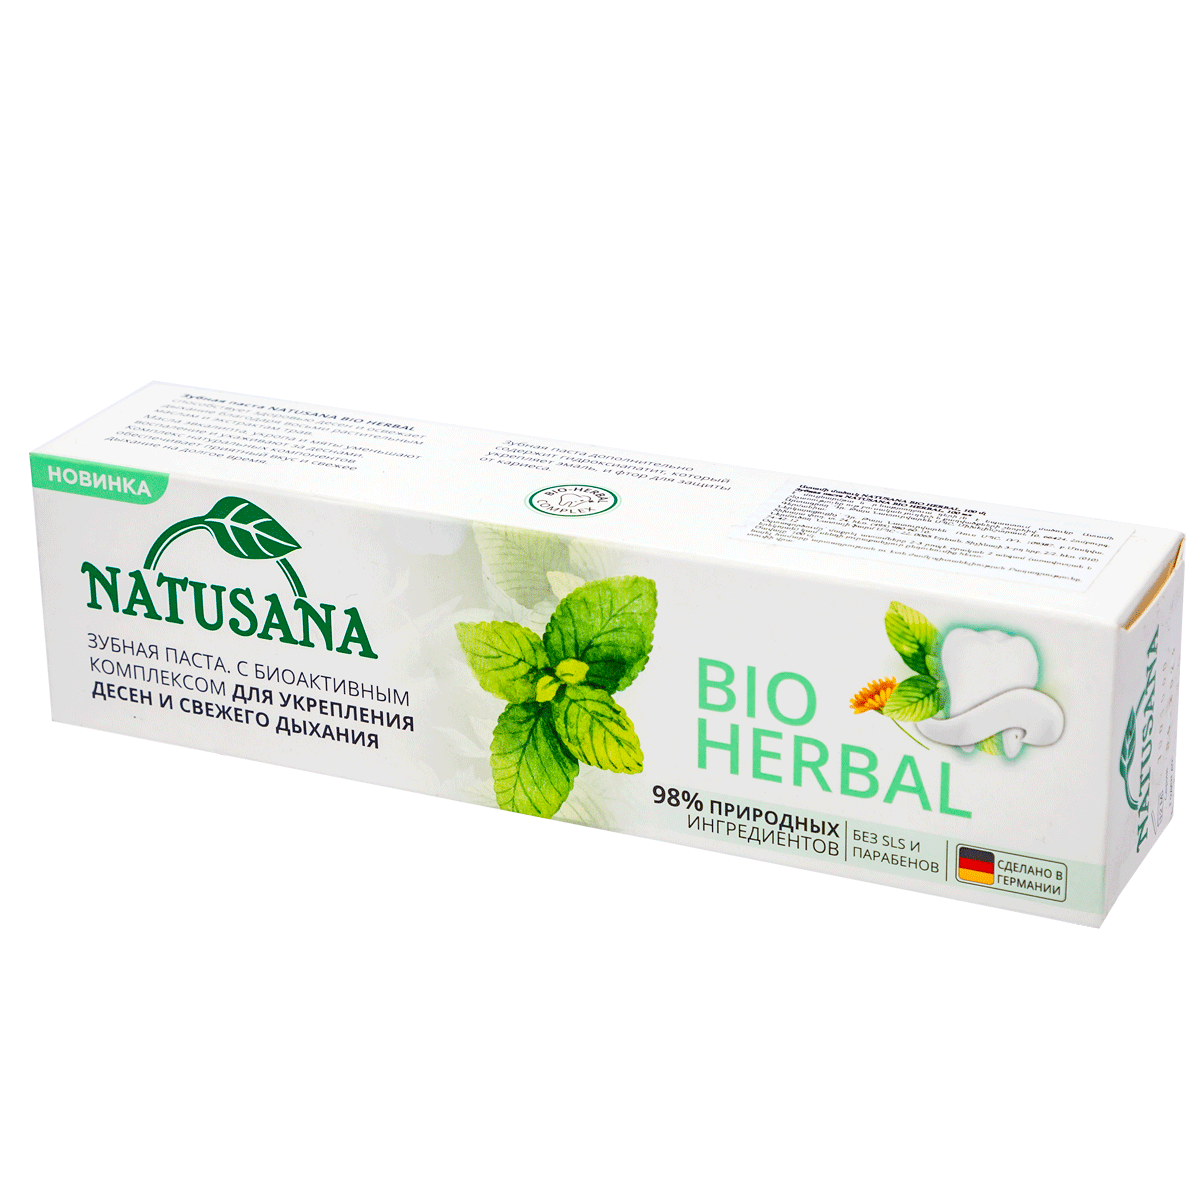 Ատամի մածուկ Natusana Bio Herbal 